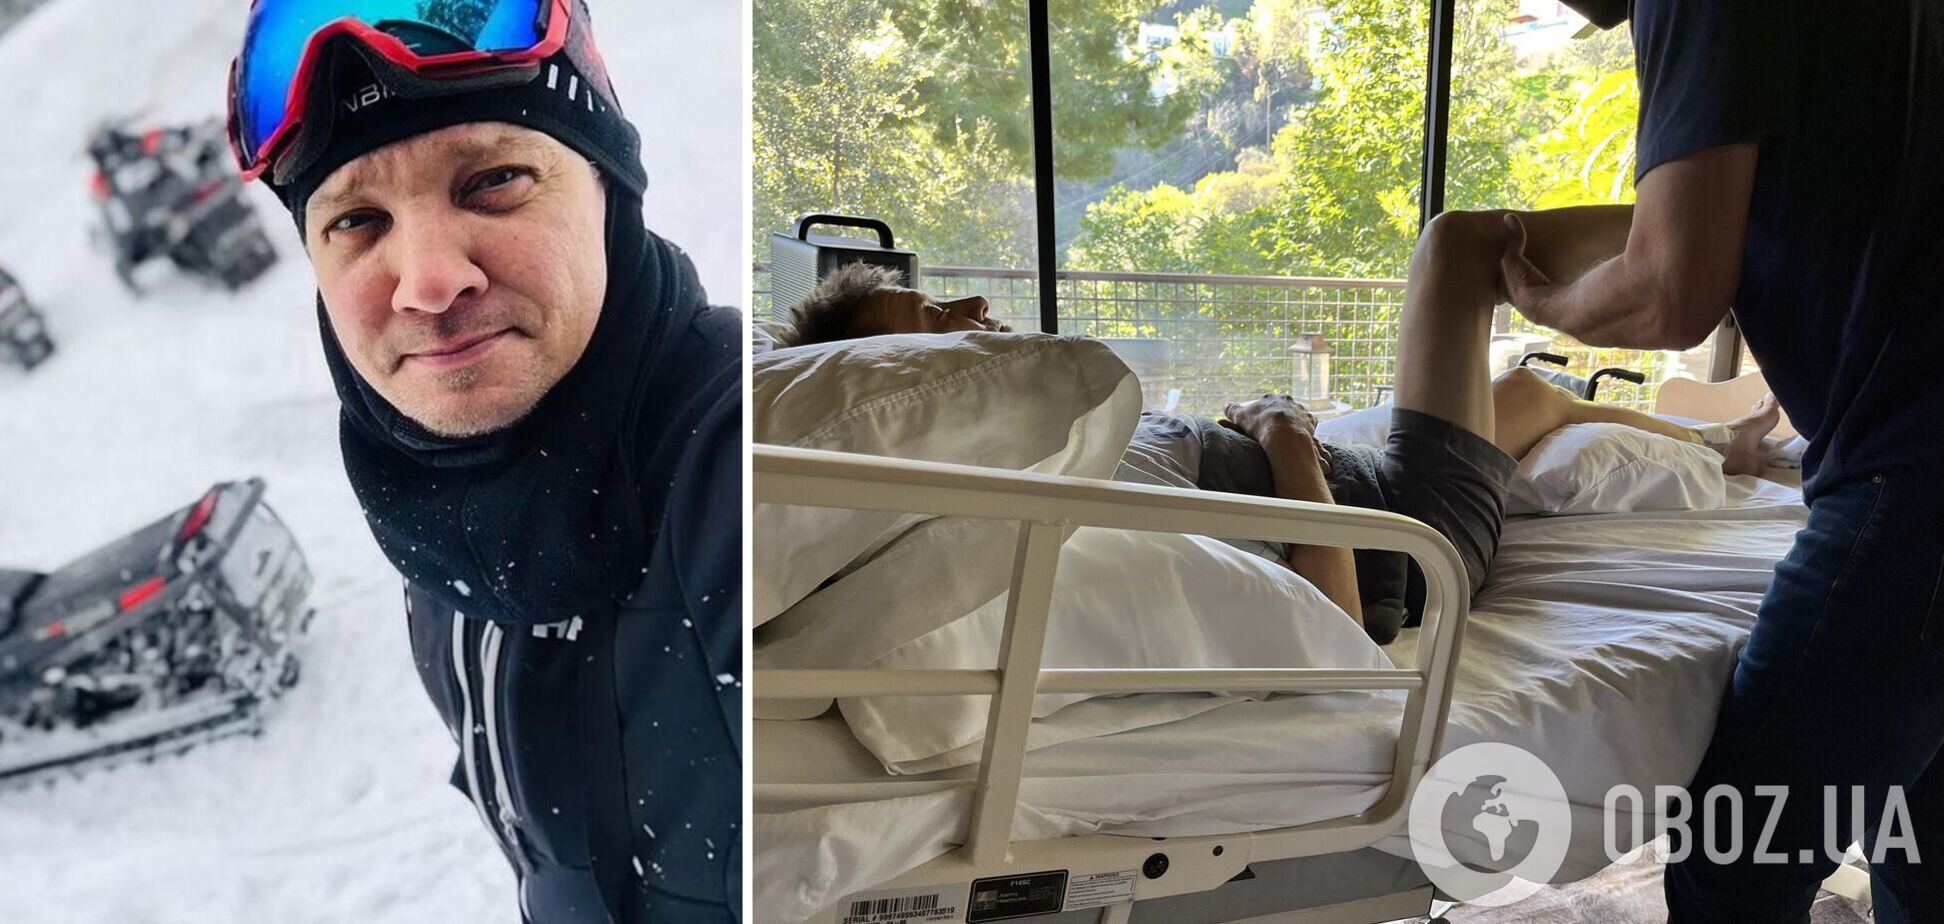 Звезда 'Мстителей' сломал более 30 костей во время несчастного случая со снегоуборочной машиной. Фото из больницы